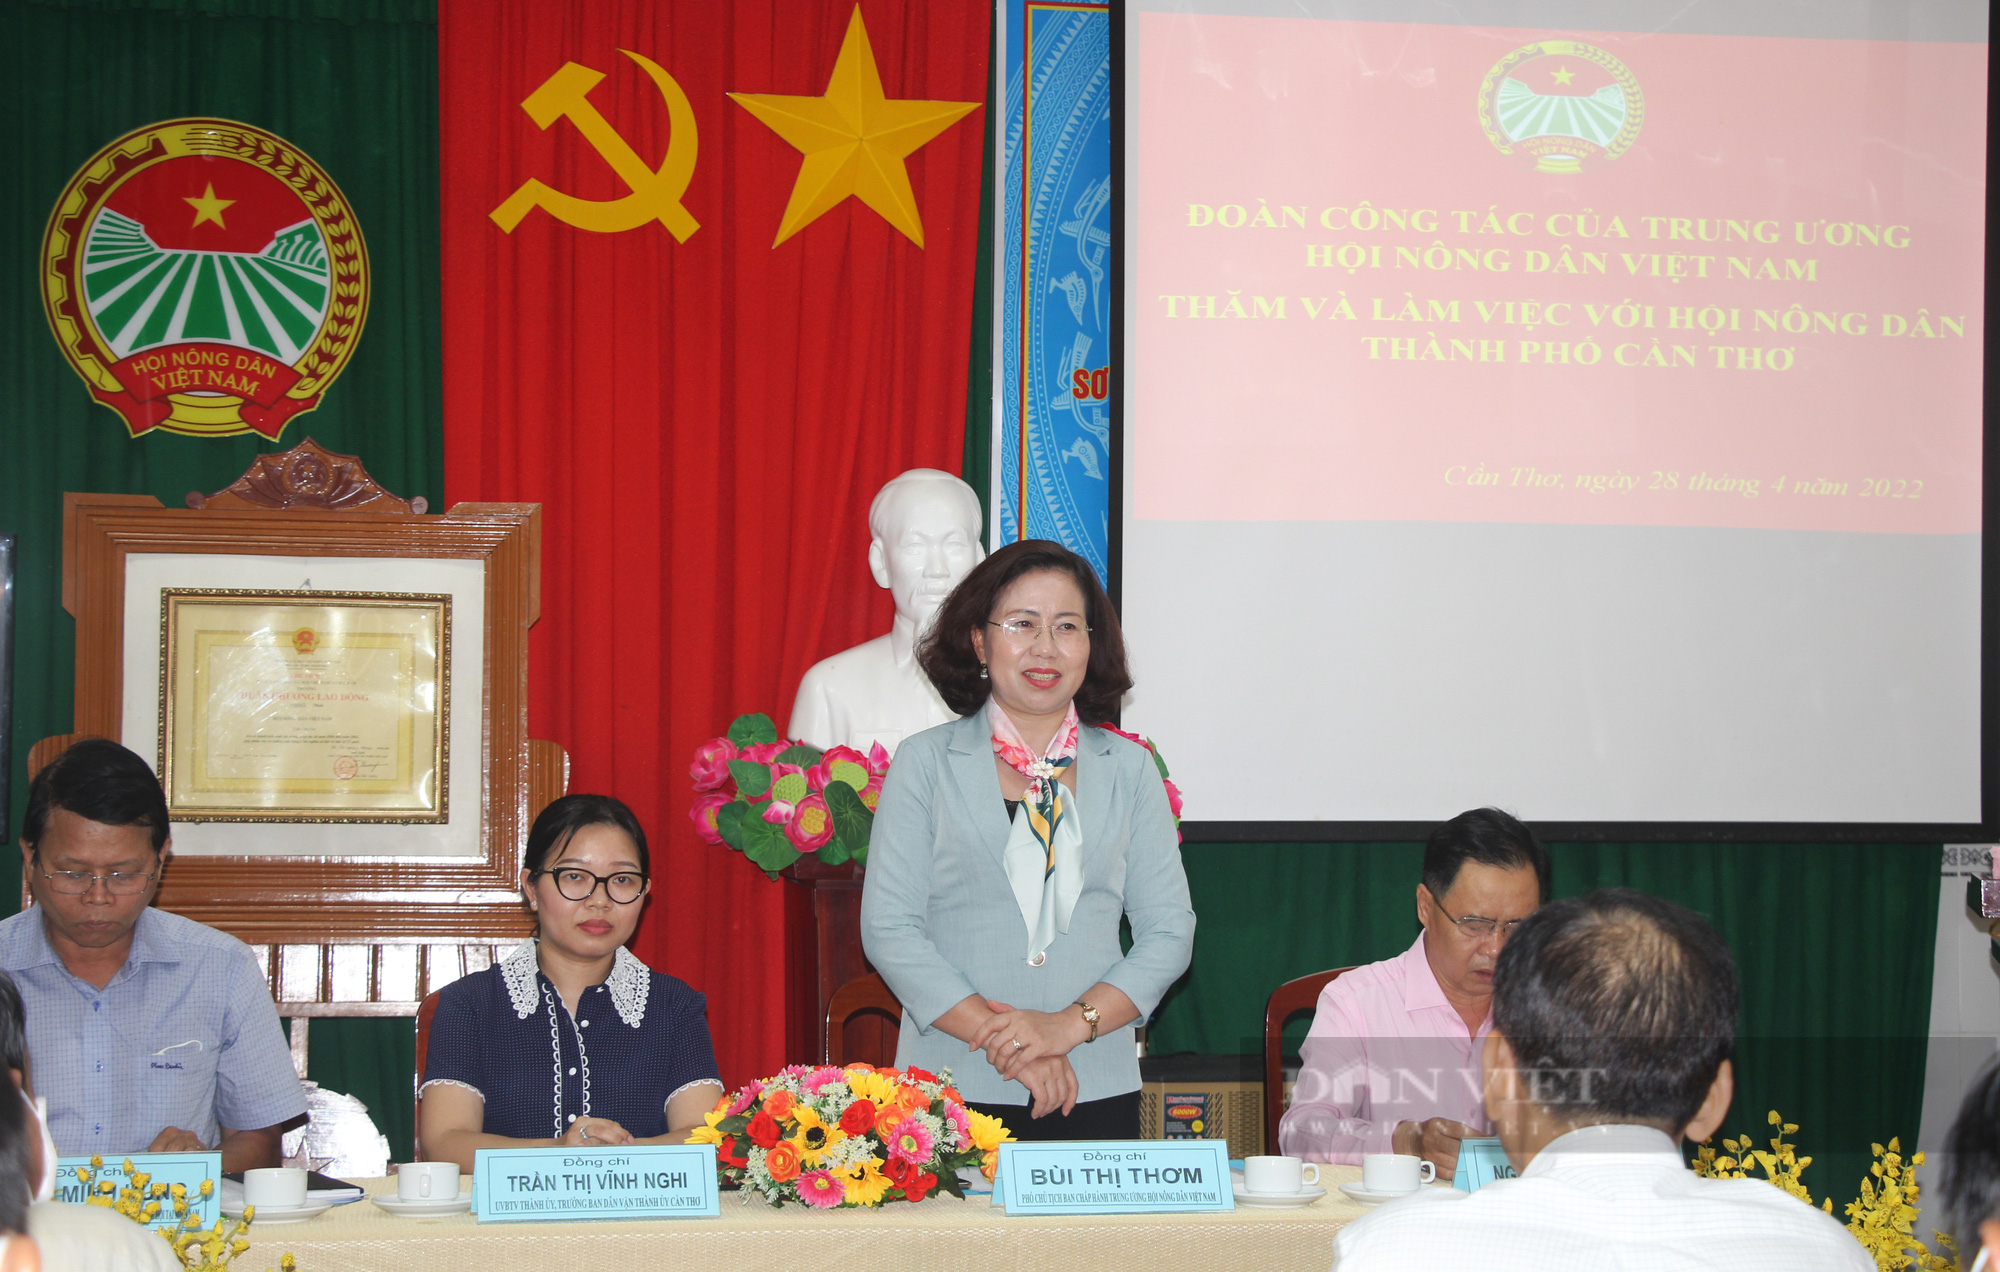 Phó Chủ tịch Hội NDVN Bùi Thị Thơm: Hội Nông dân TP  Cần Thơ cần chủ động thực hiện nhiều công việc - Ảnh 1.